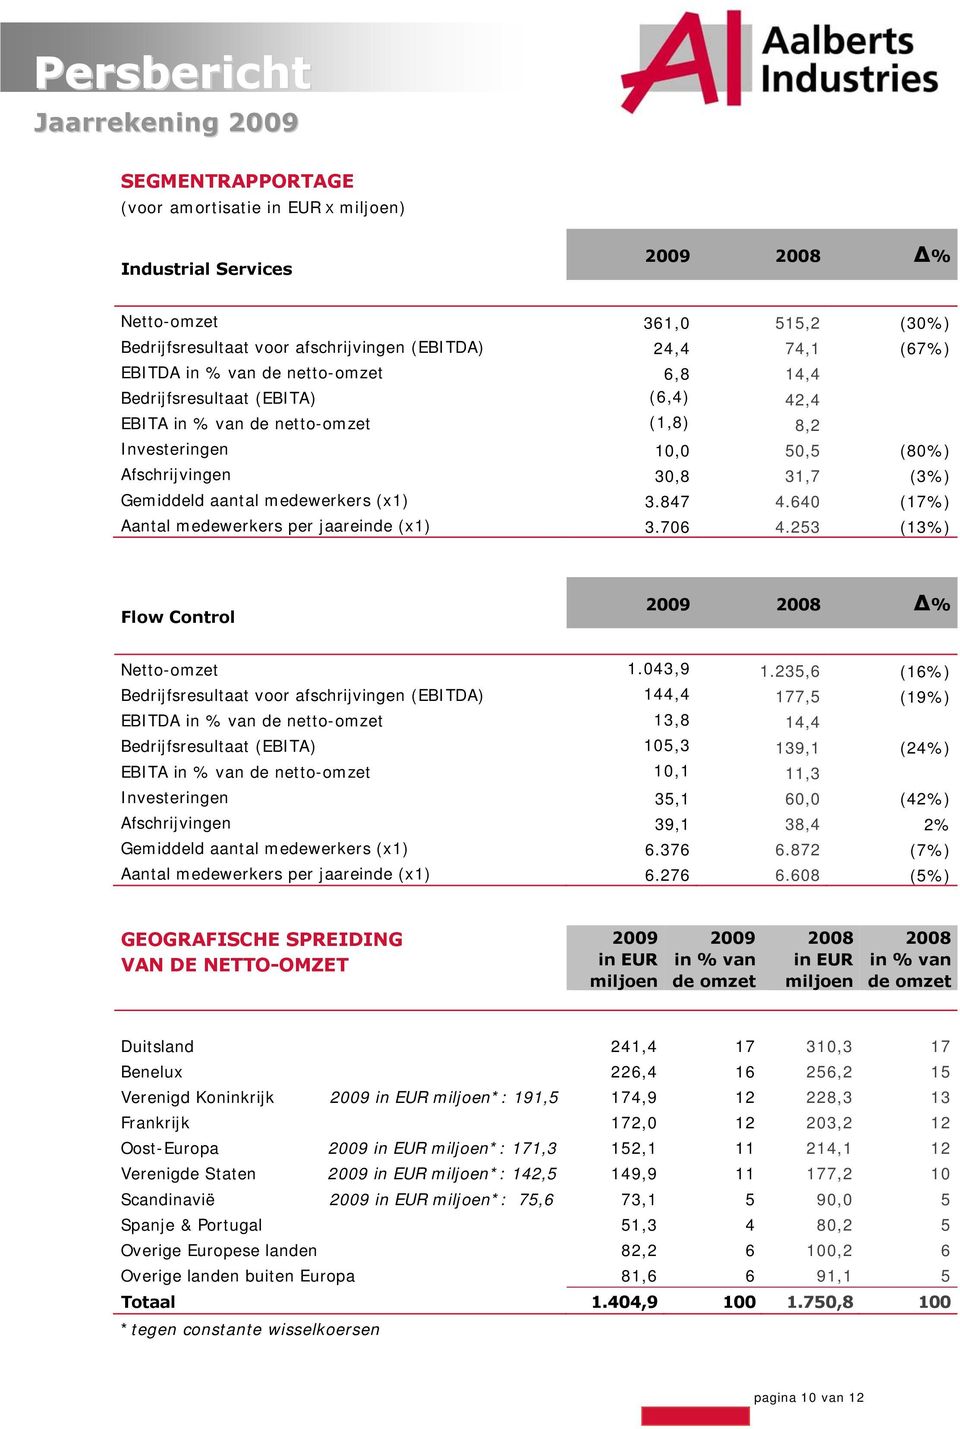 640 (17%) Aantal medewerkers per jaareinde (x1) 3.706 4.253 (13%) Flow Control 2009 2008 % Netto-omzet 1.043,9 1.